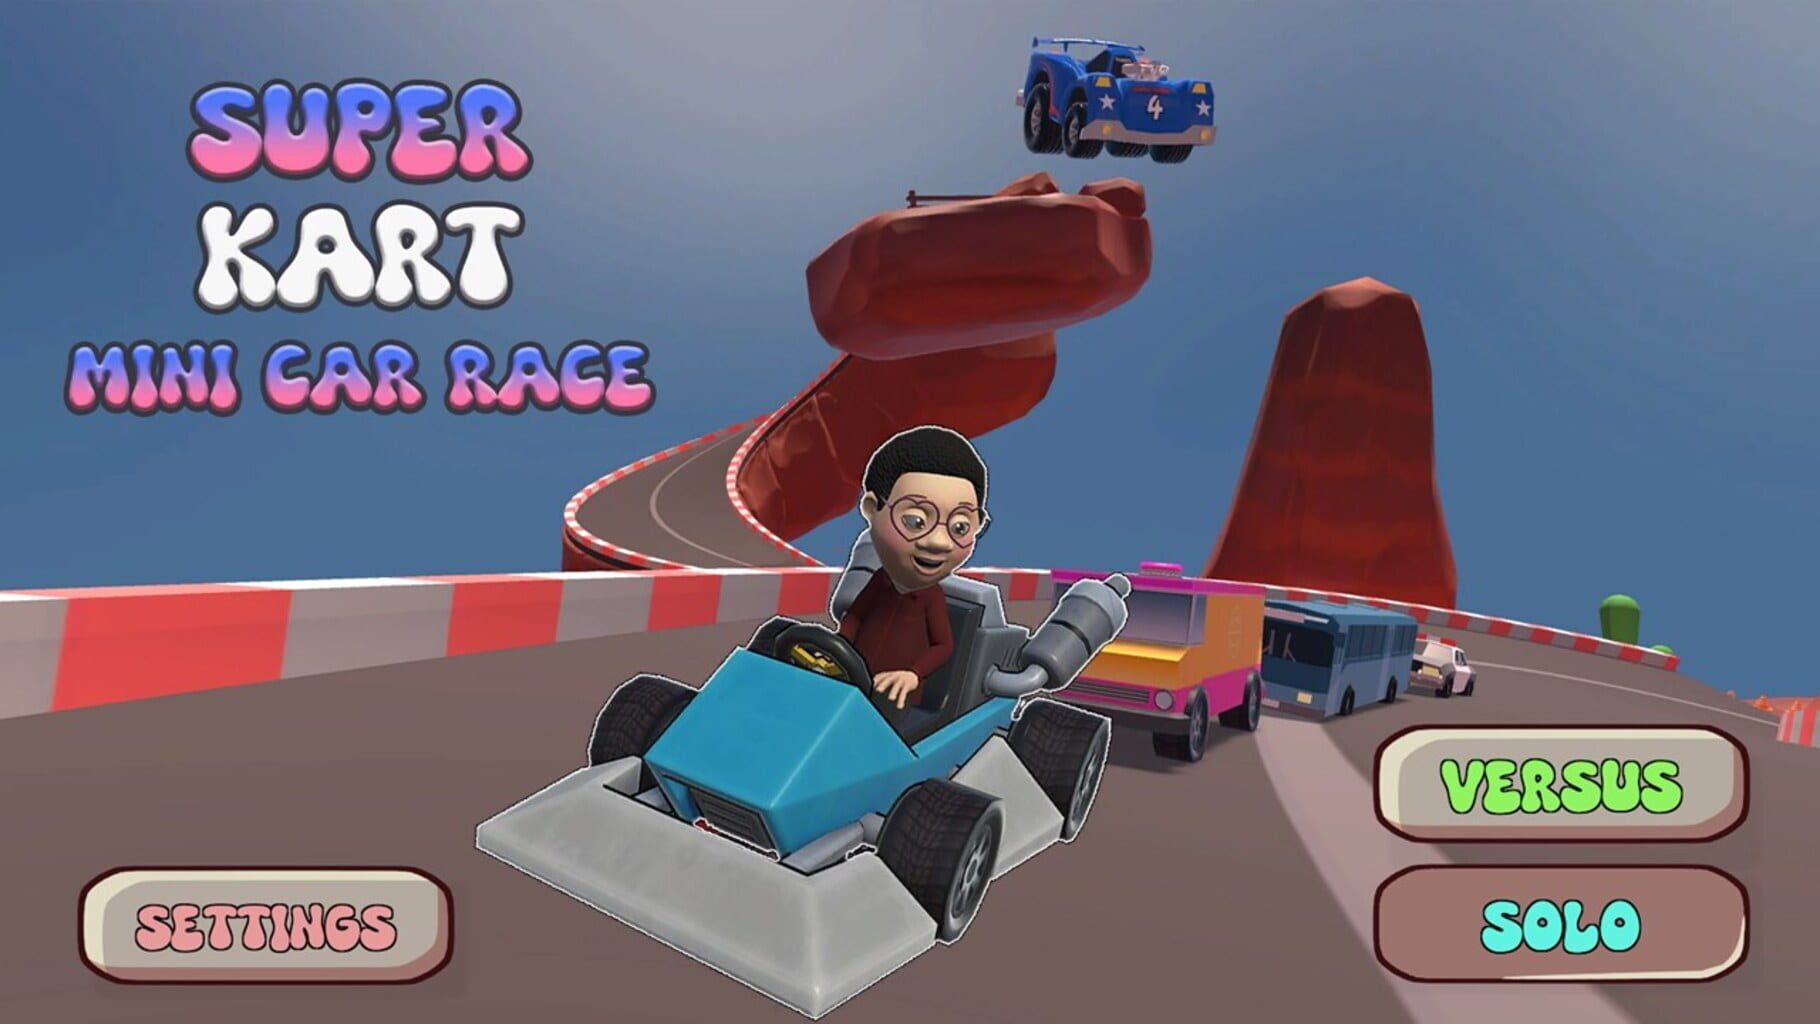 Super Kart Mini Car Race Image